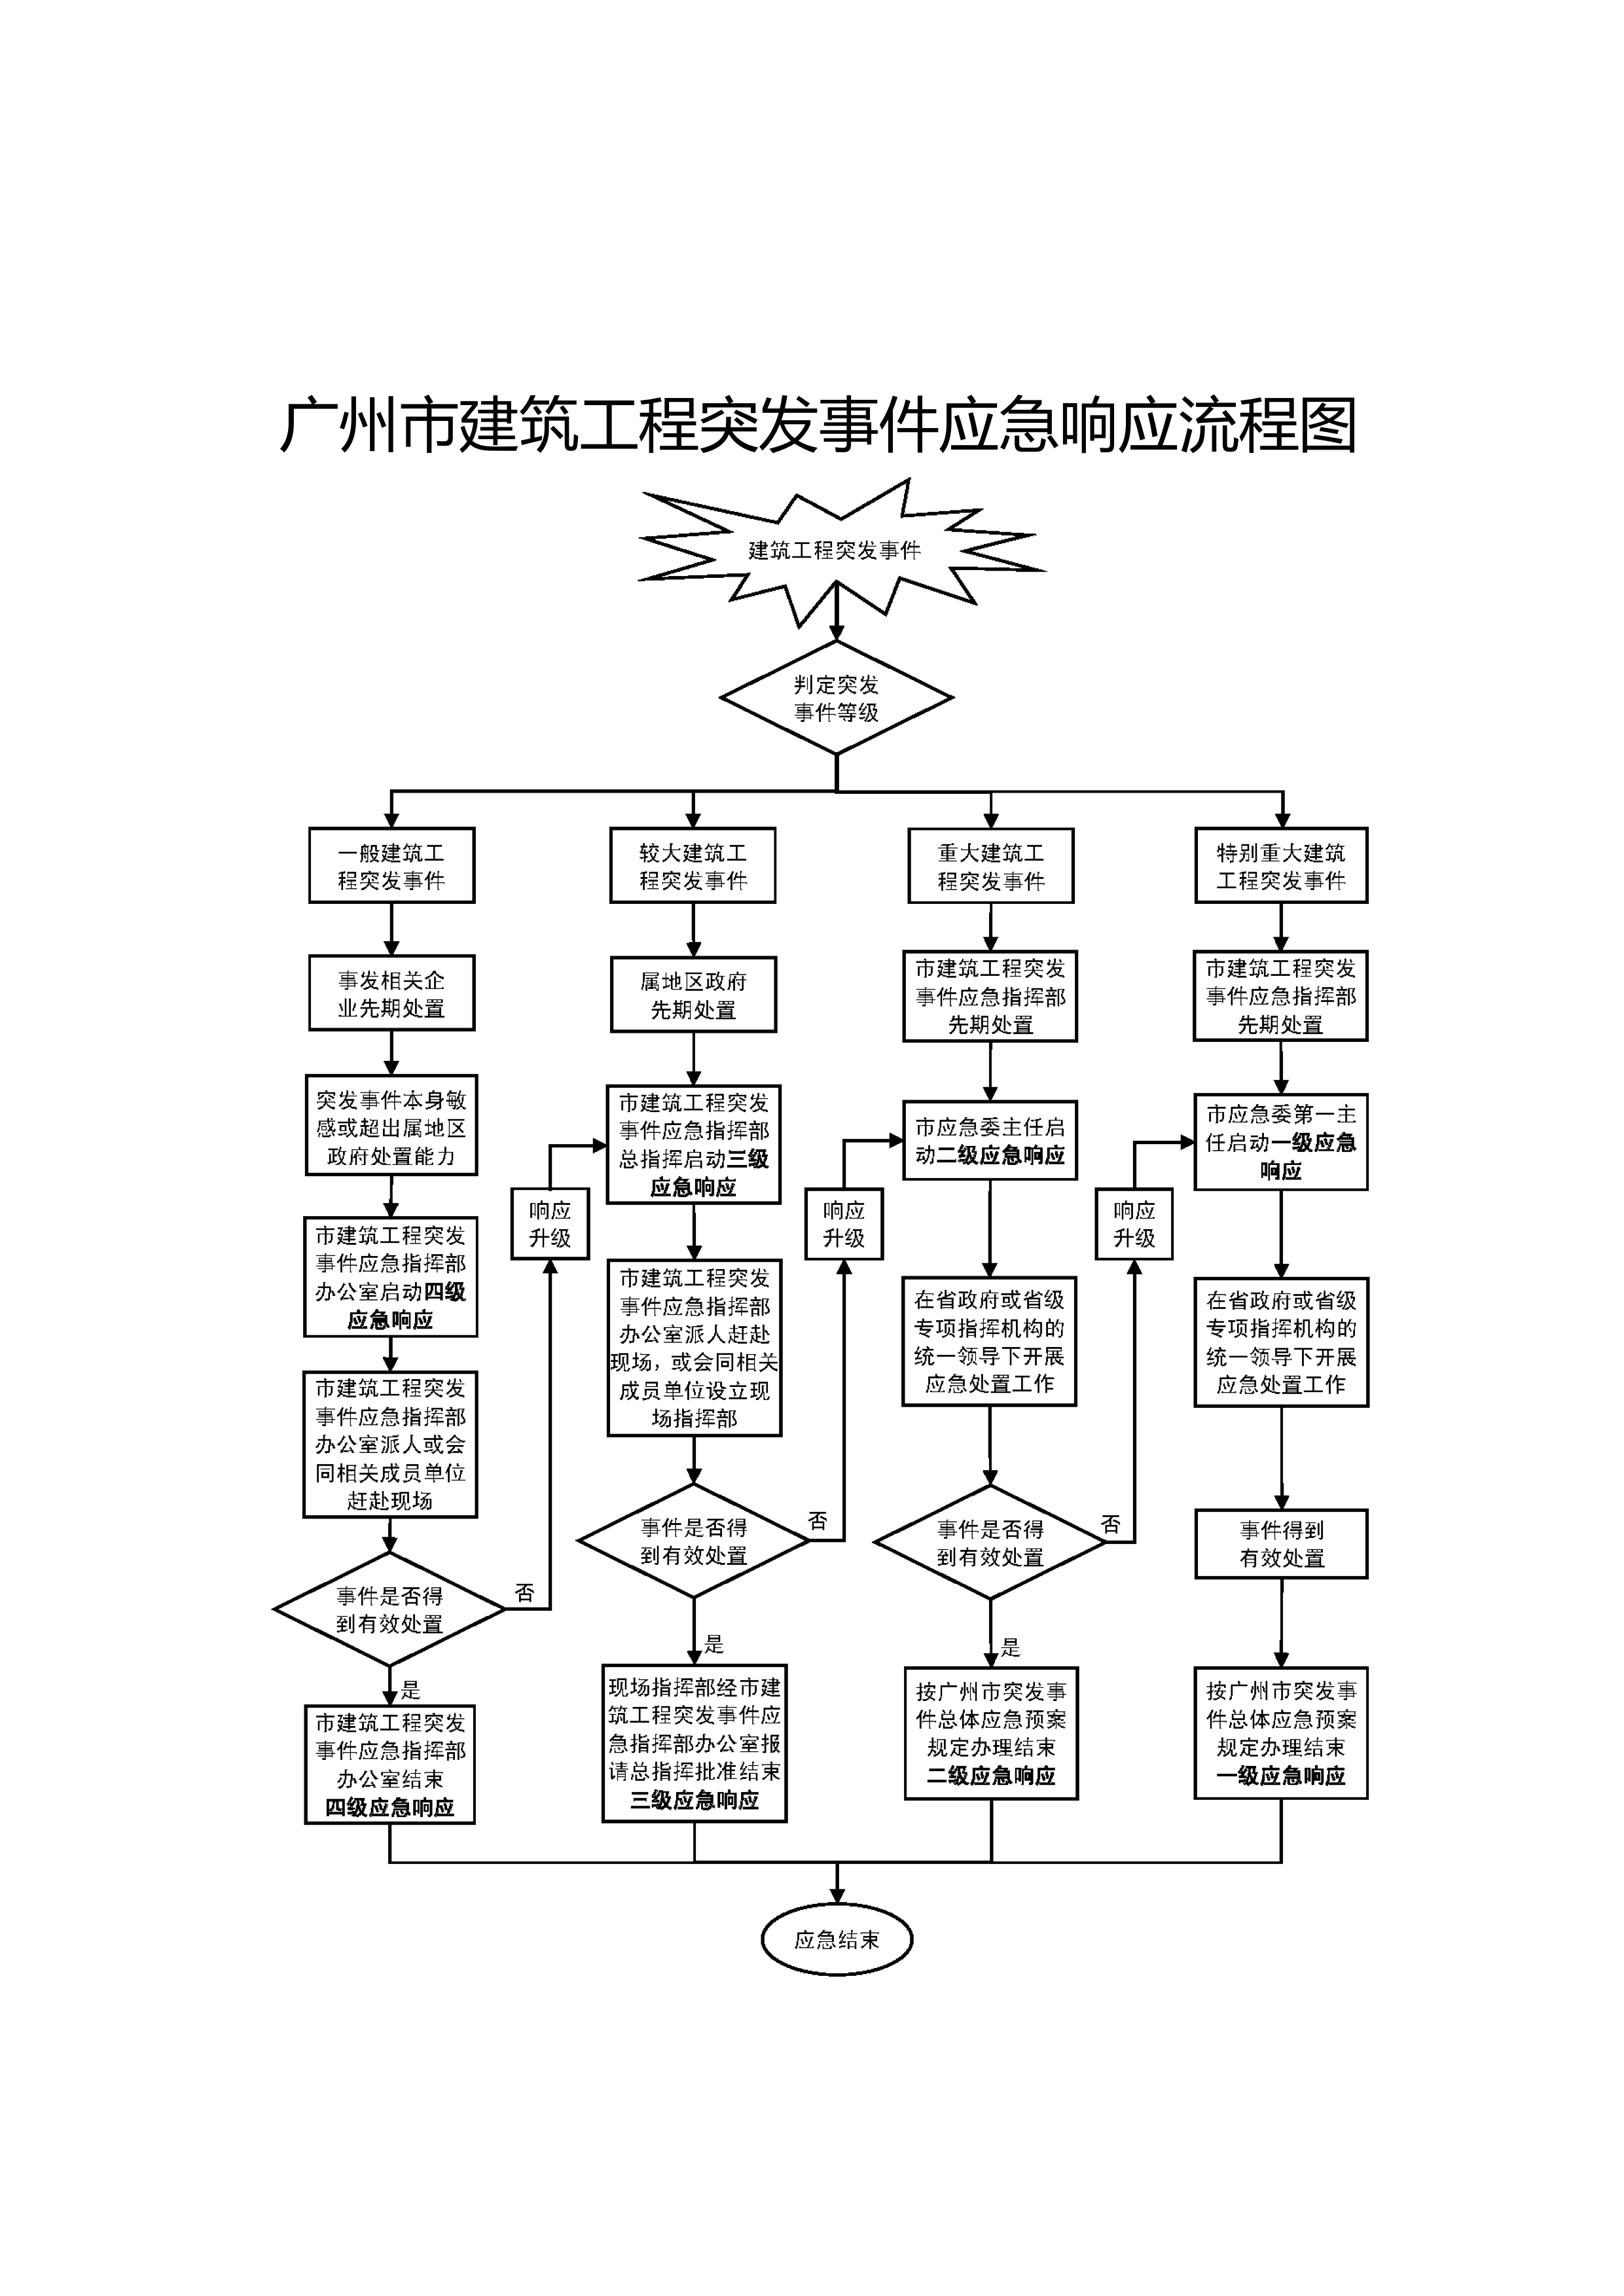 附件3广州市建筑工程突发事件应急响应流程图.png